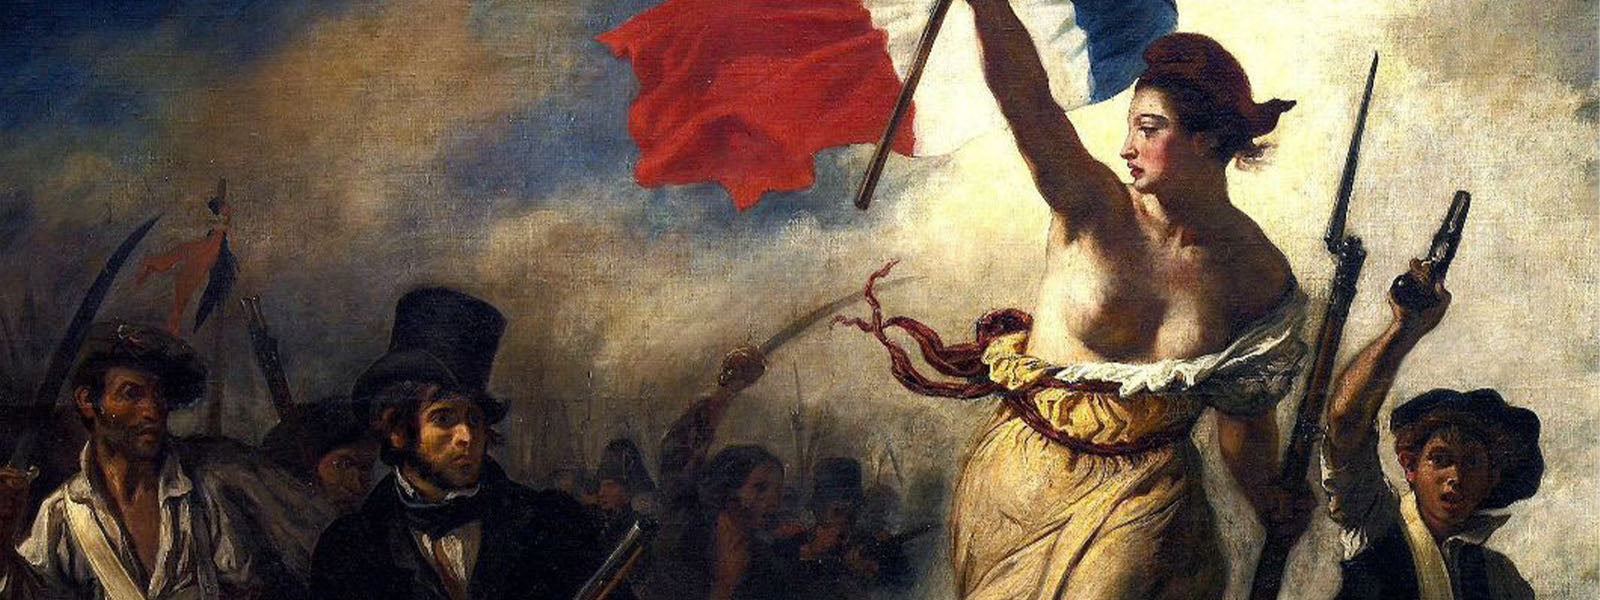 Révolution Française